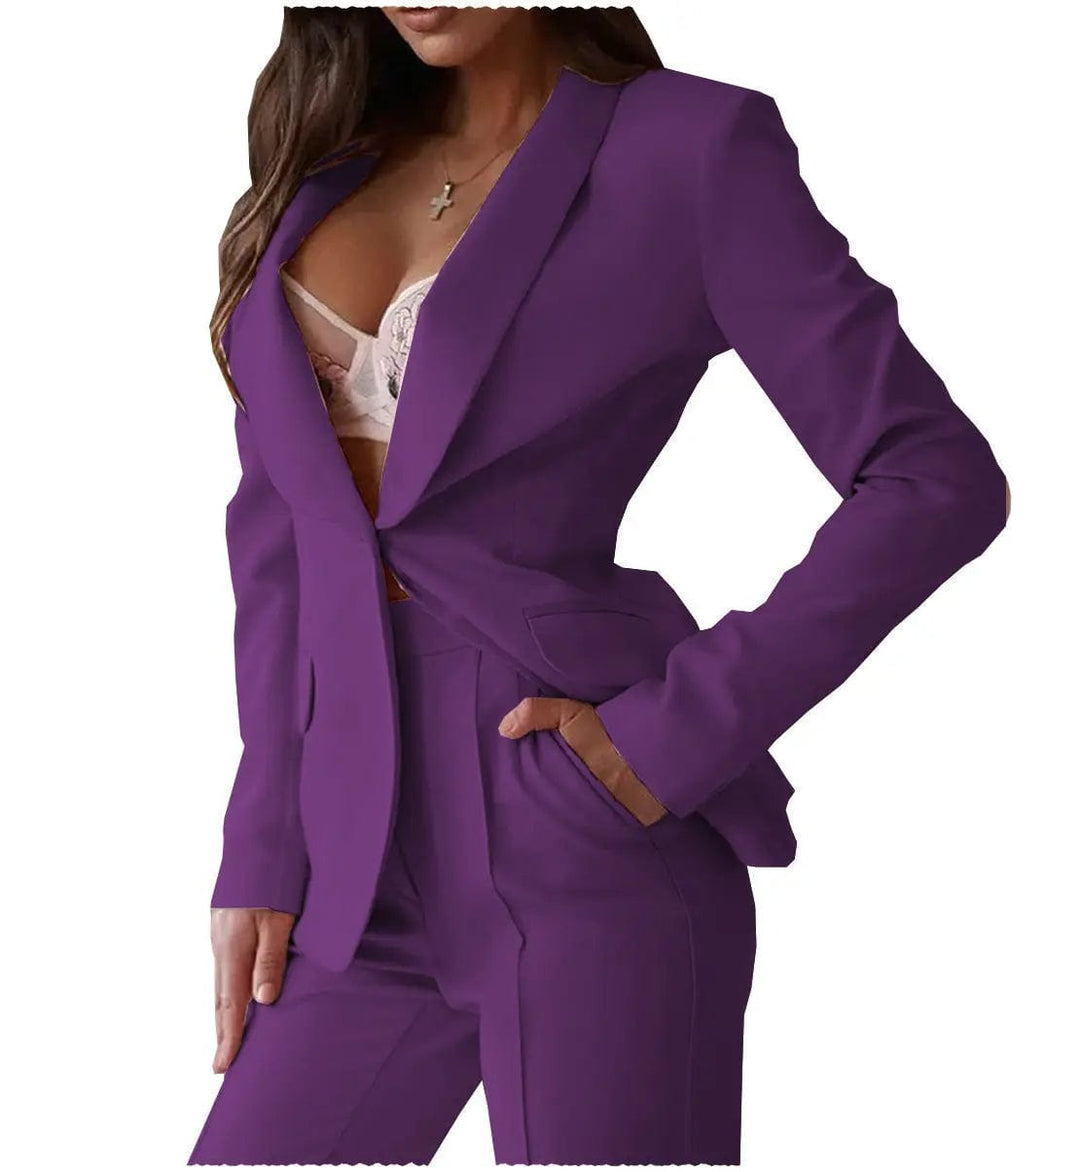 solovedress Fashion Single Buttons Blazer 2 Pieces Women Suit